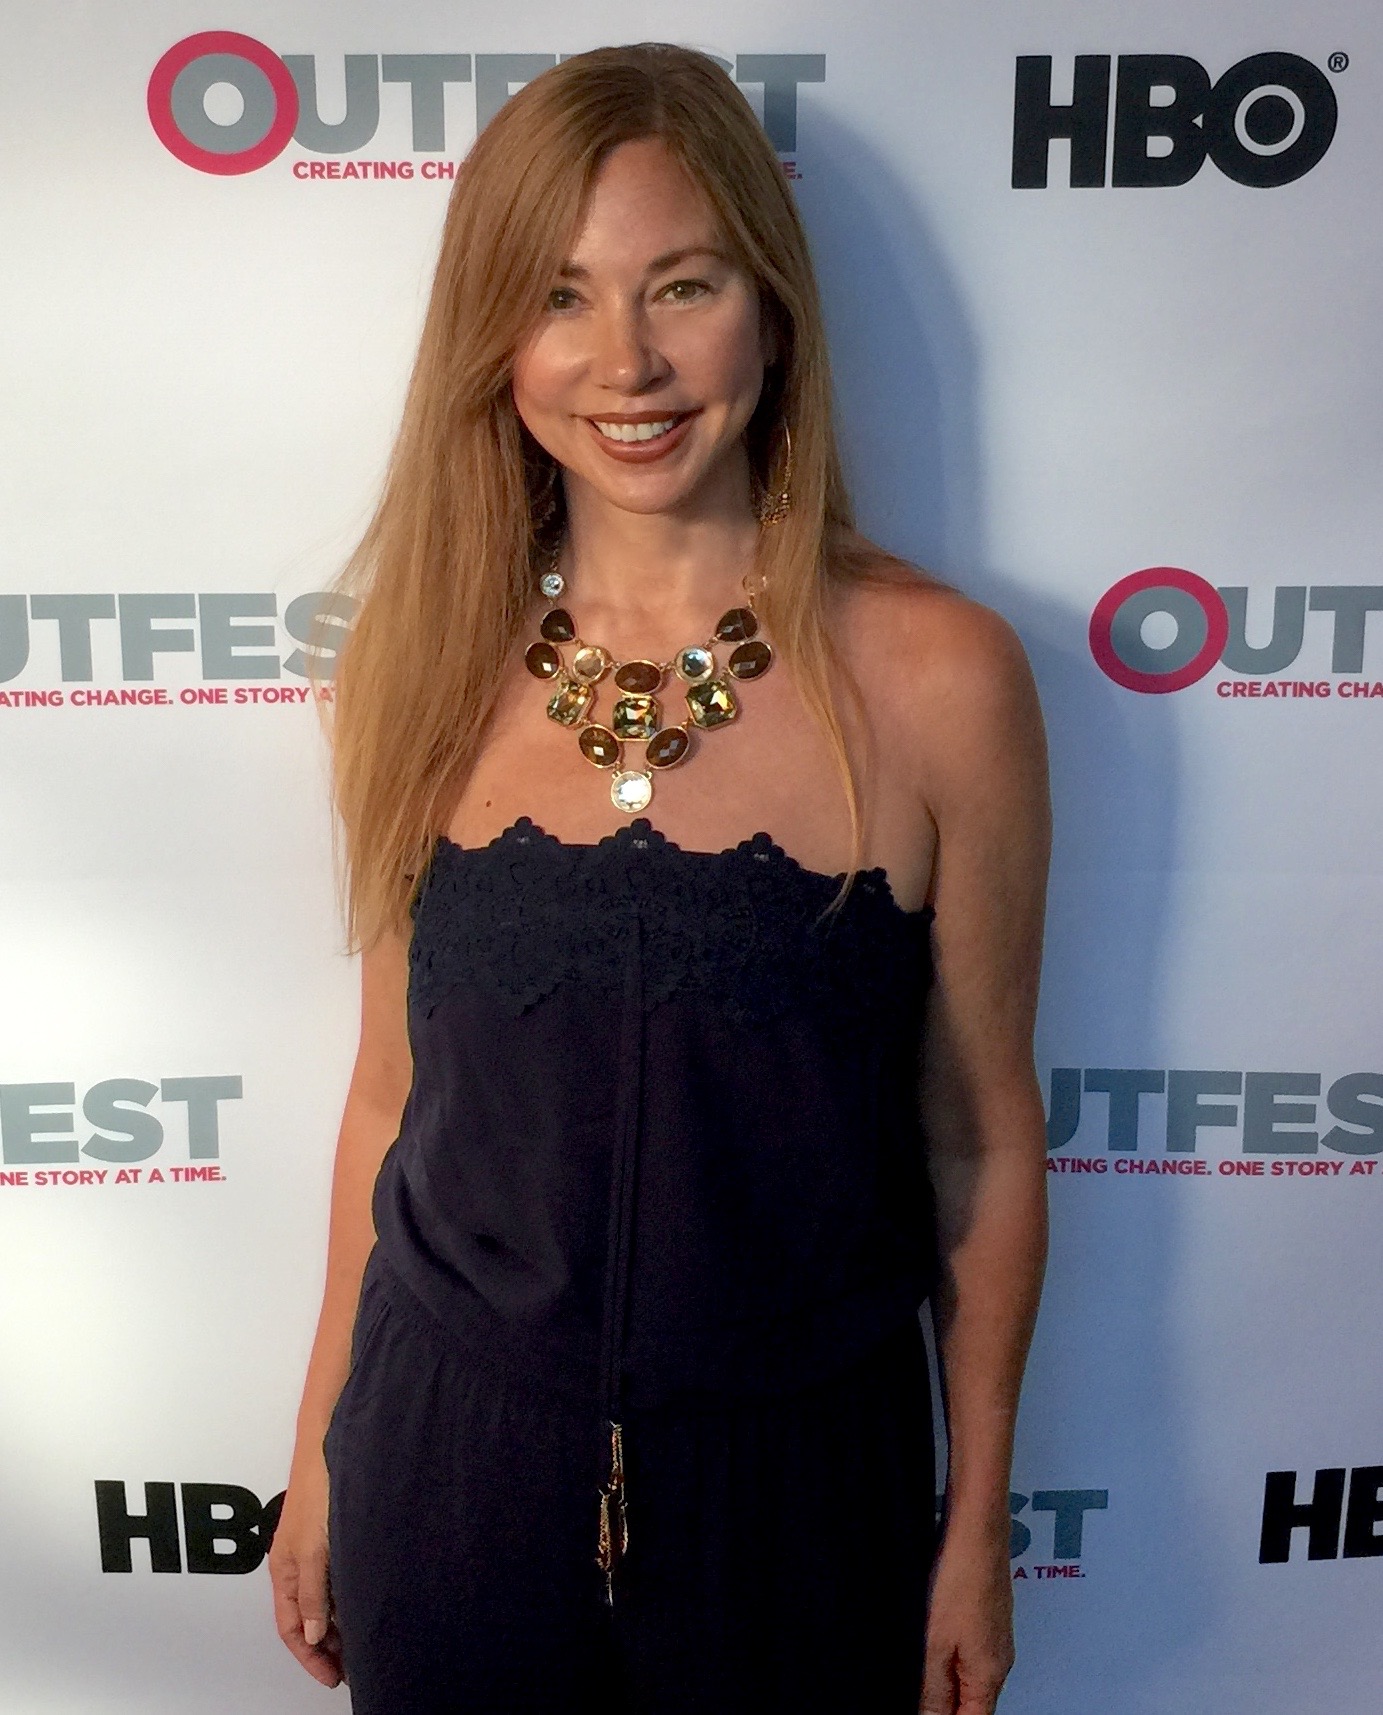 Kim Kopf at HBO Outfest Film Festival.